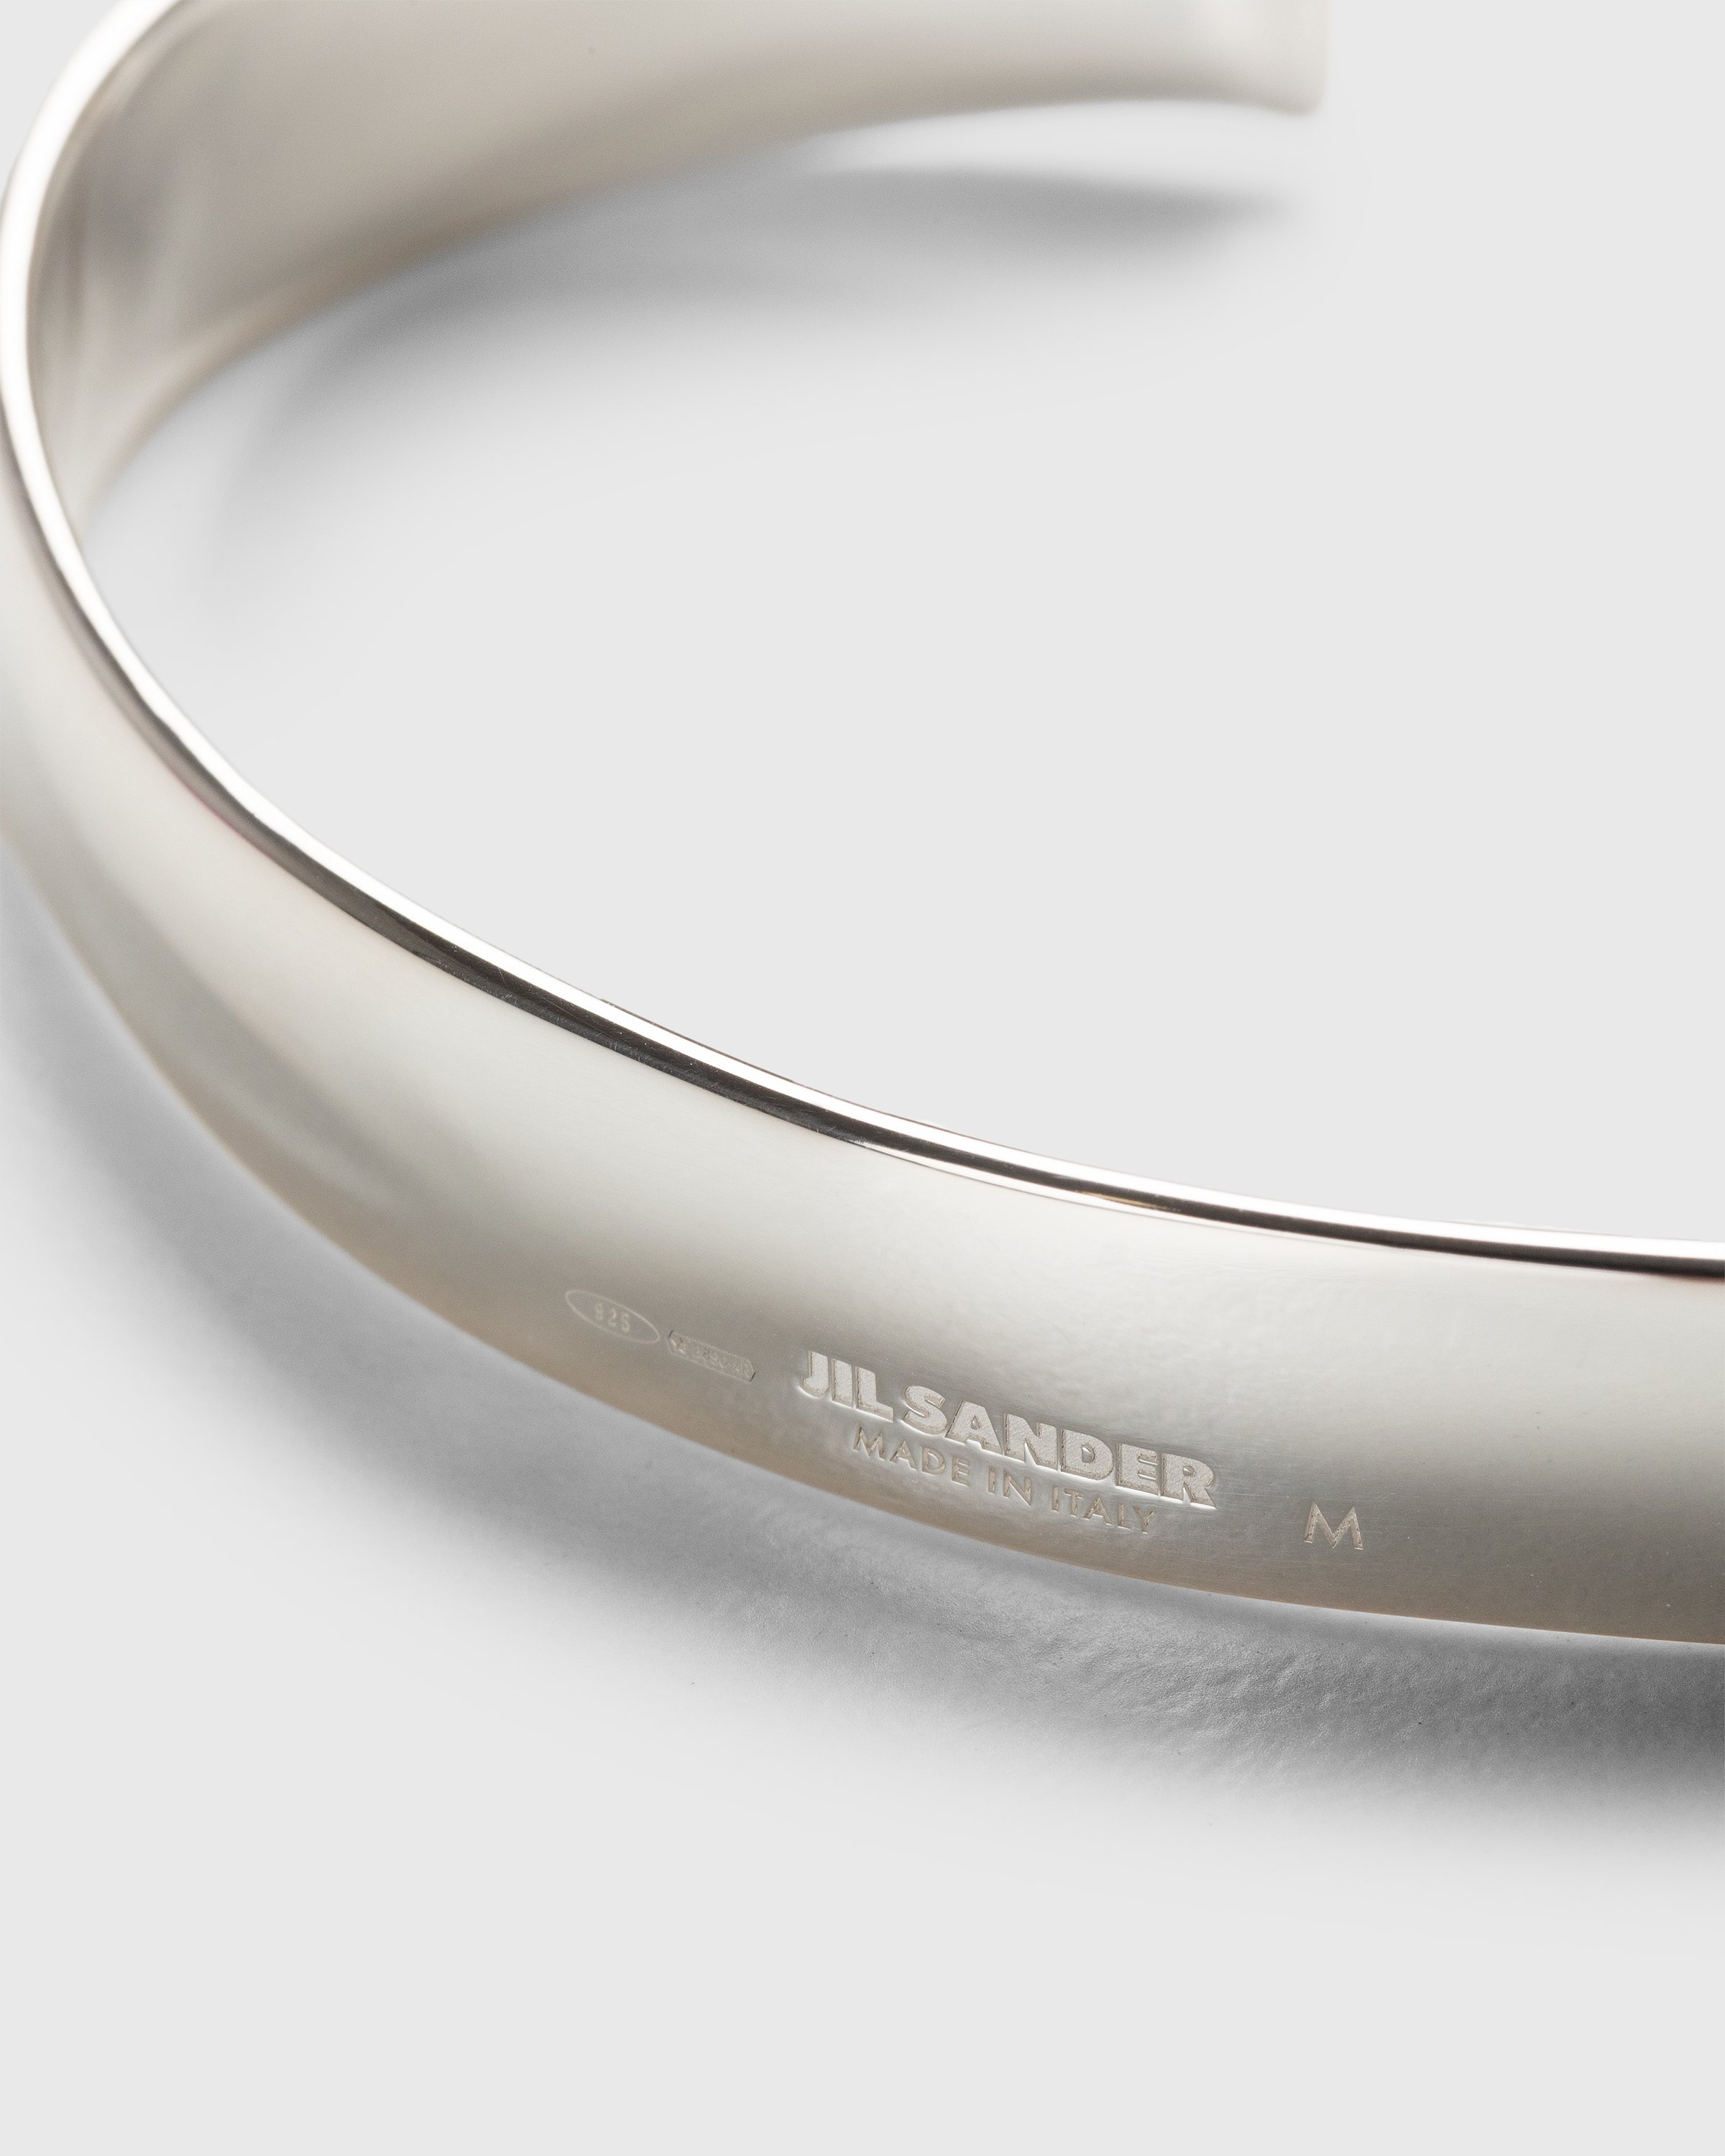 Jil Sander - Engraved Logo Band Bracelet Silver - Accessories - Silver - Image 2